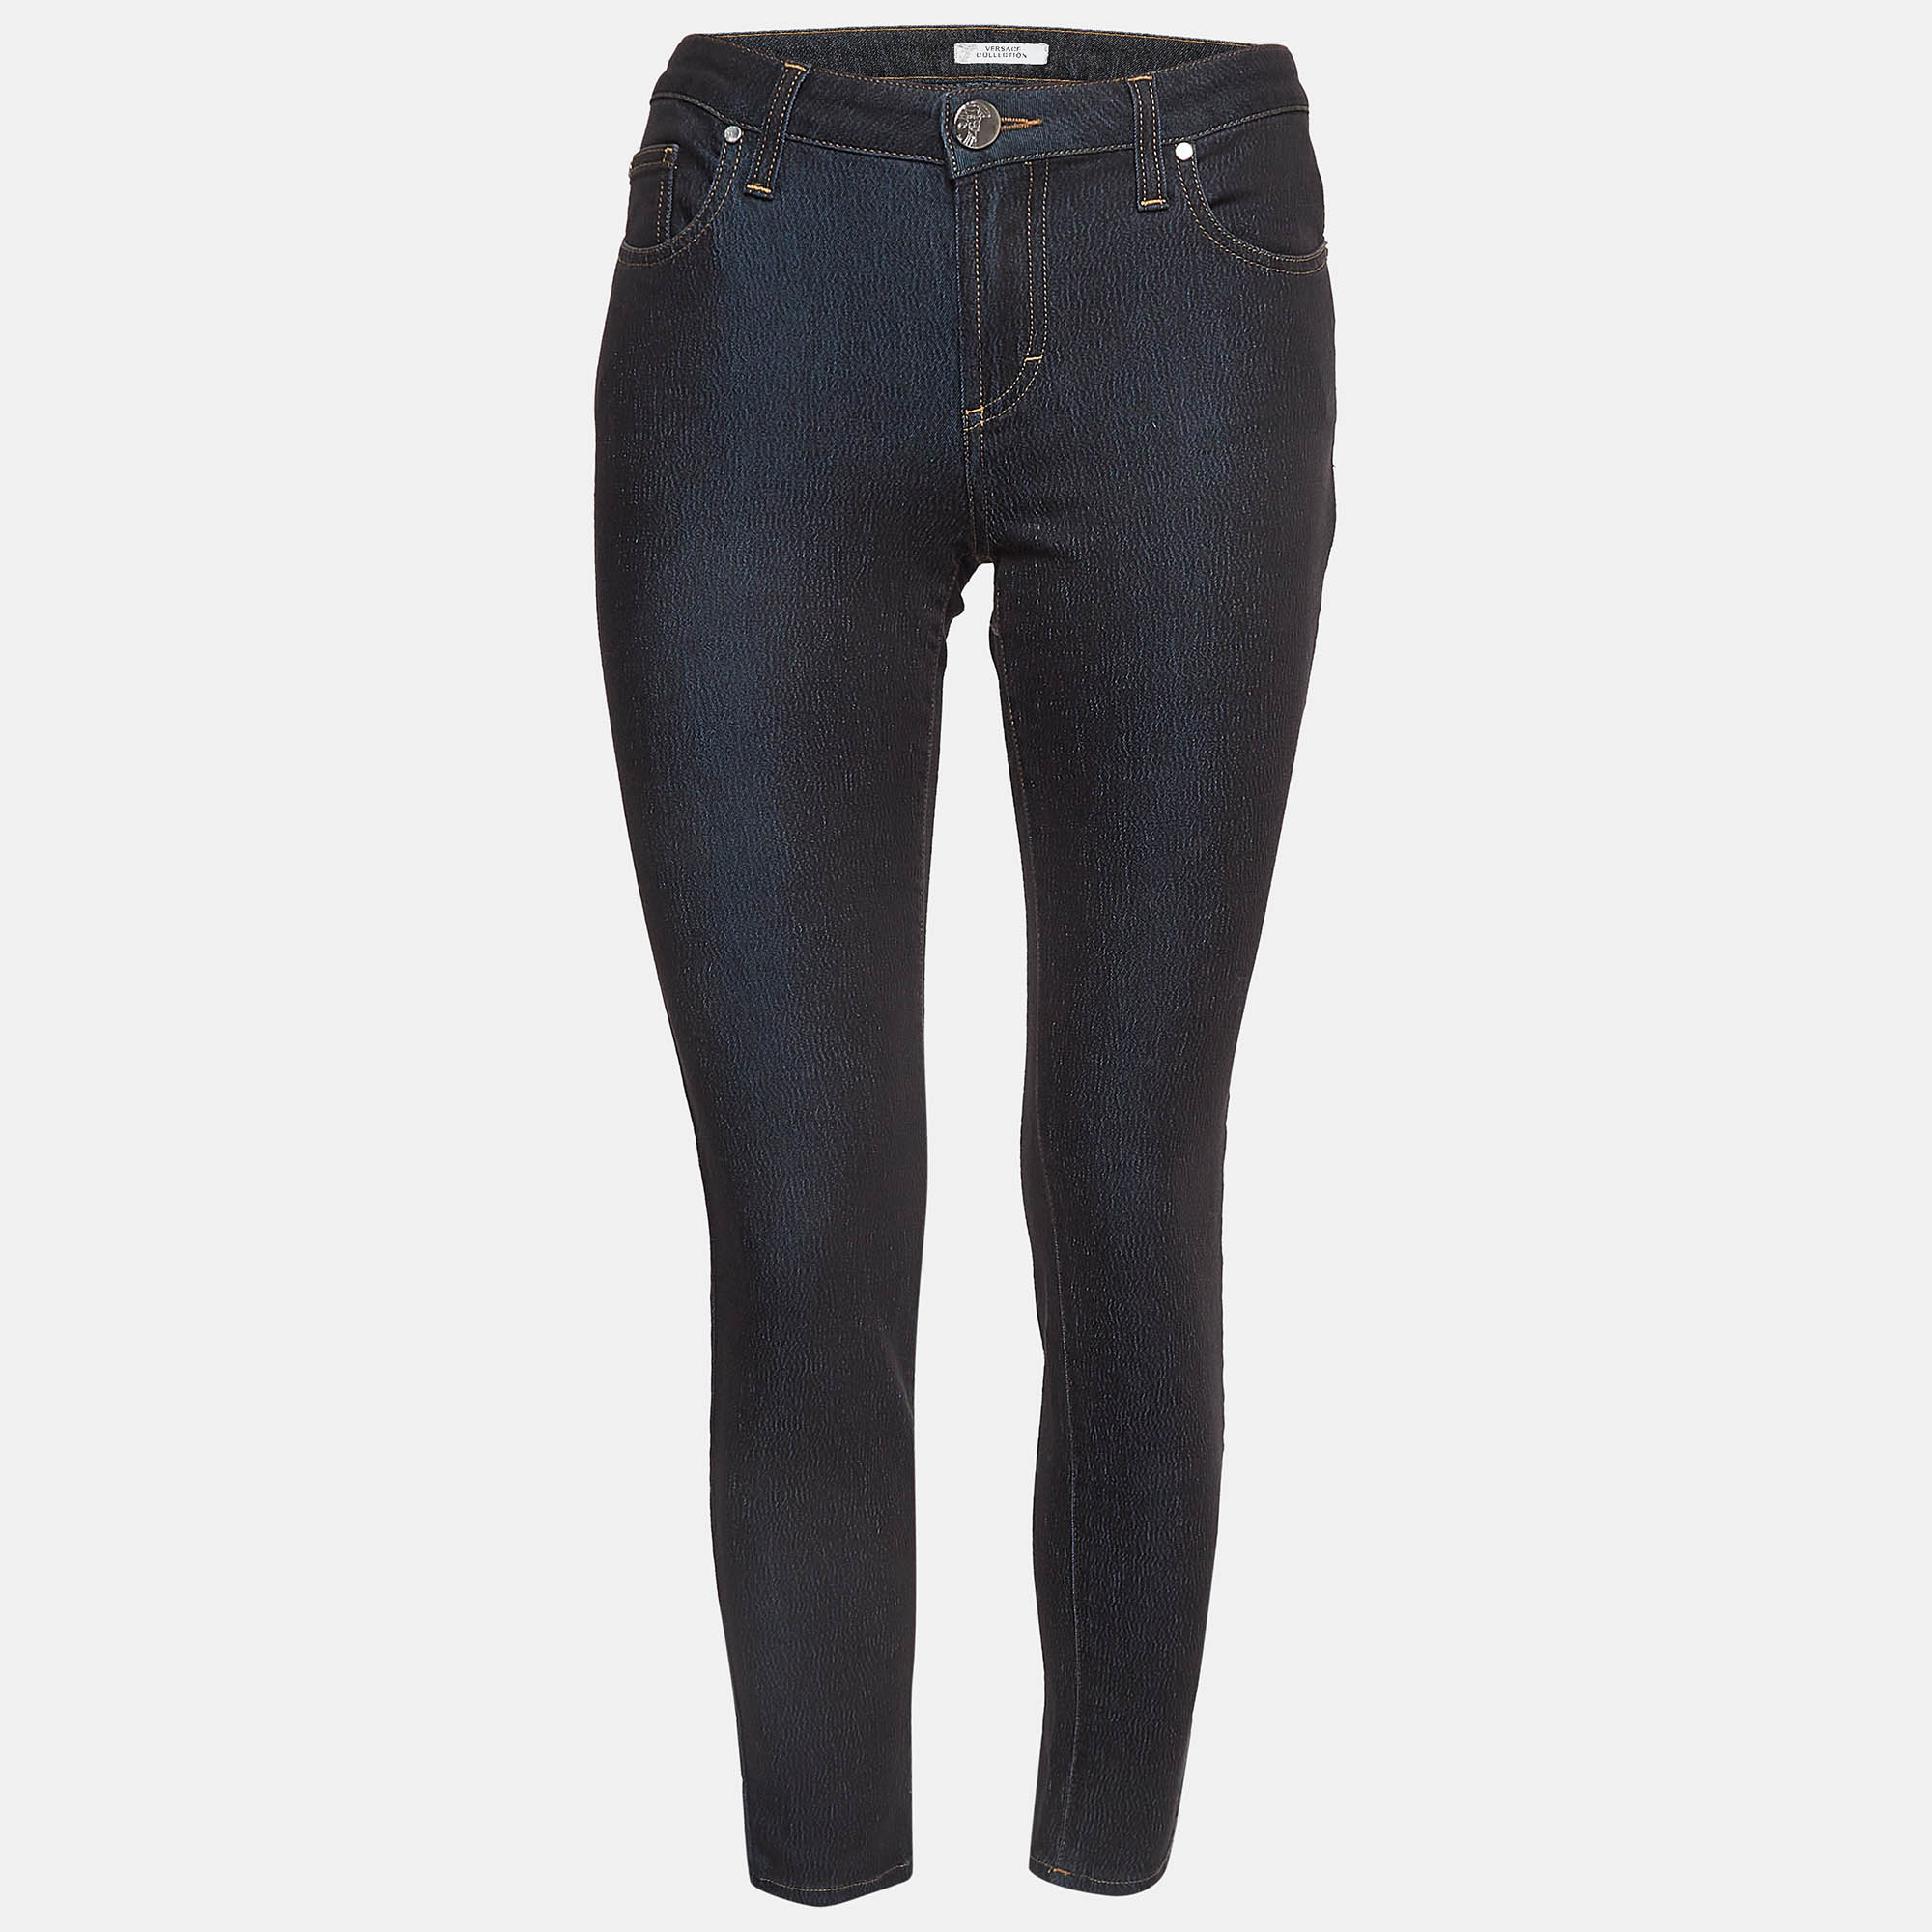 Versace collection navy blue denim pocket embellished jeans m waist 28"